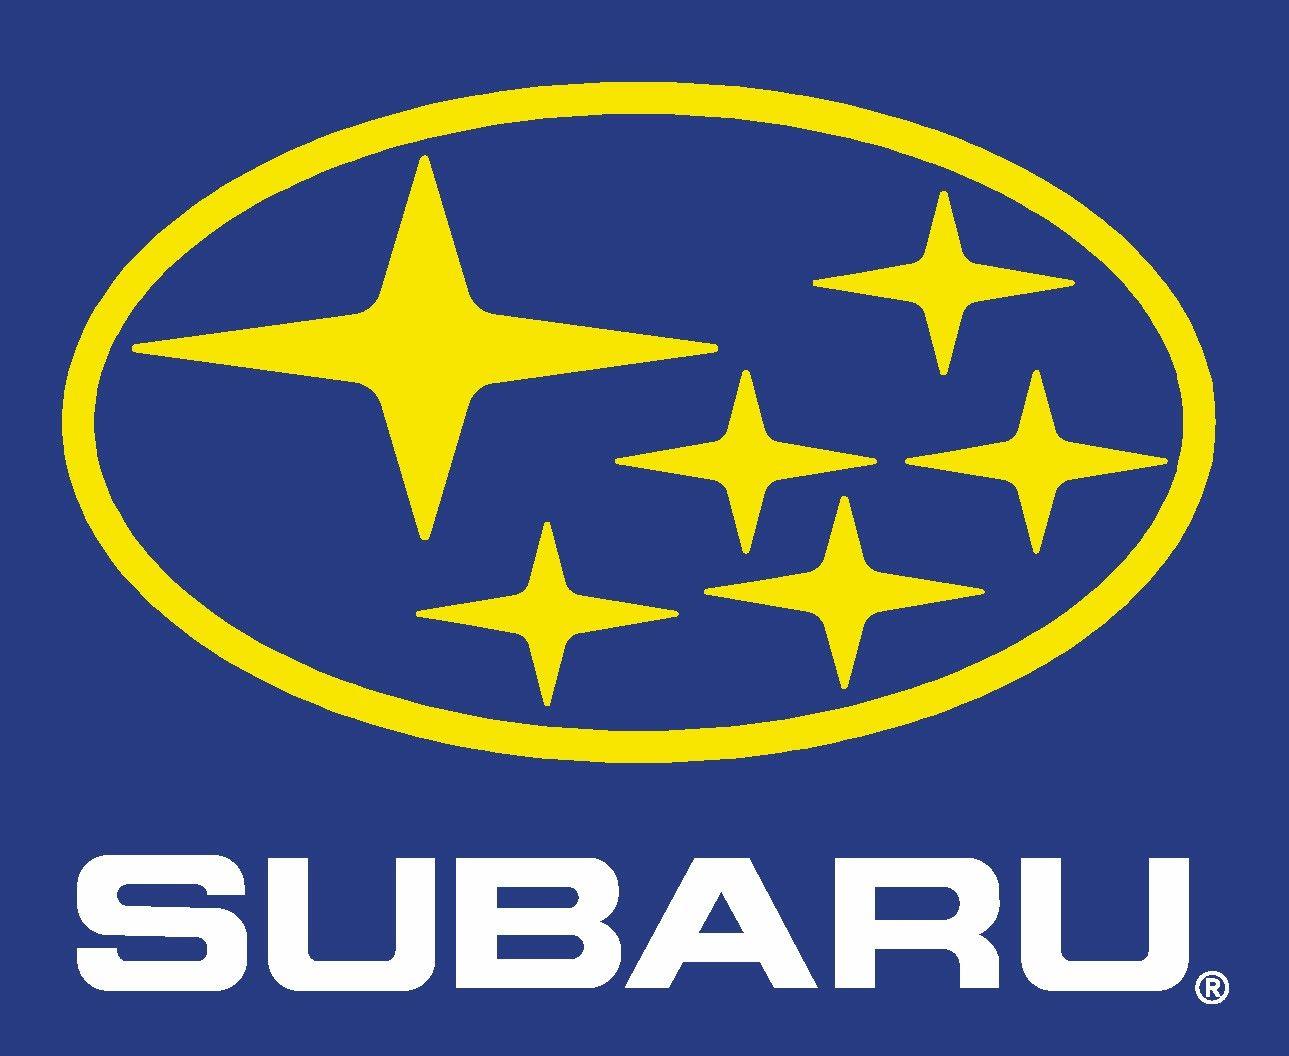 Dilation Logo - Subaru Logo, Subaru Car Symbol Meaning and History | Car Brand Names.com